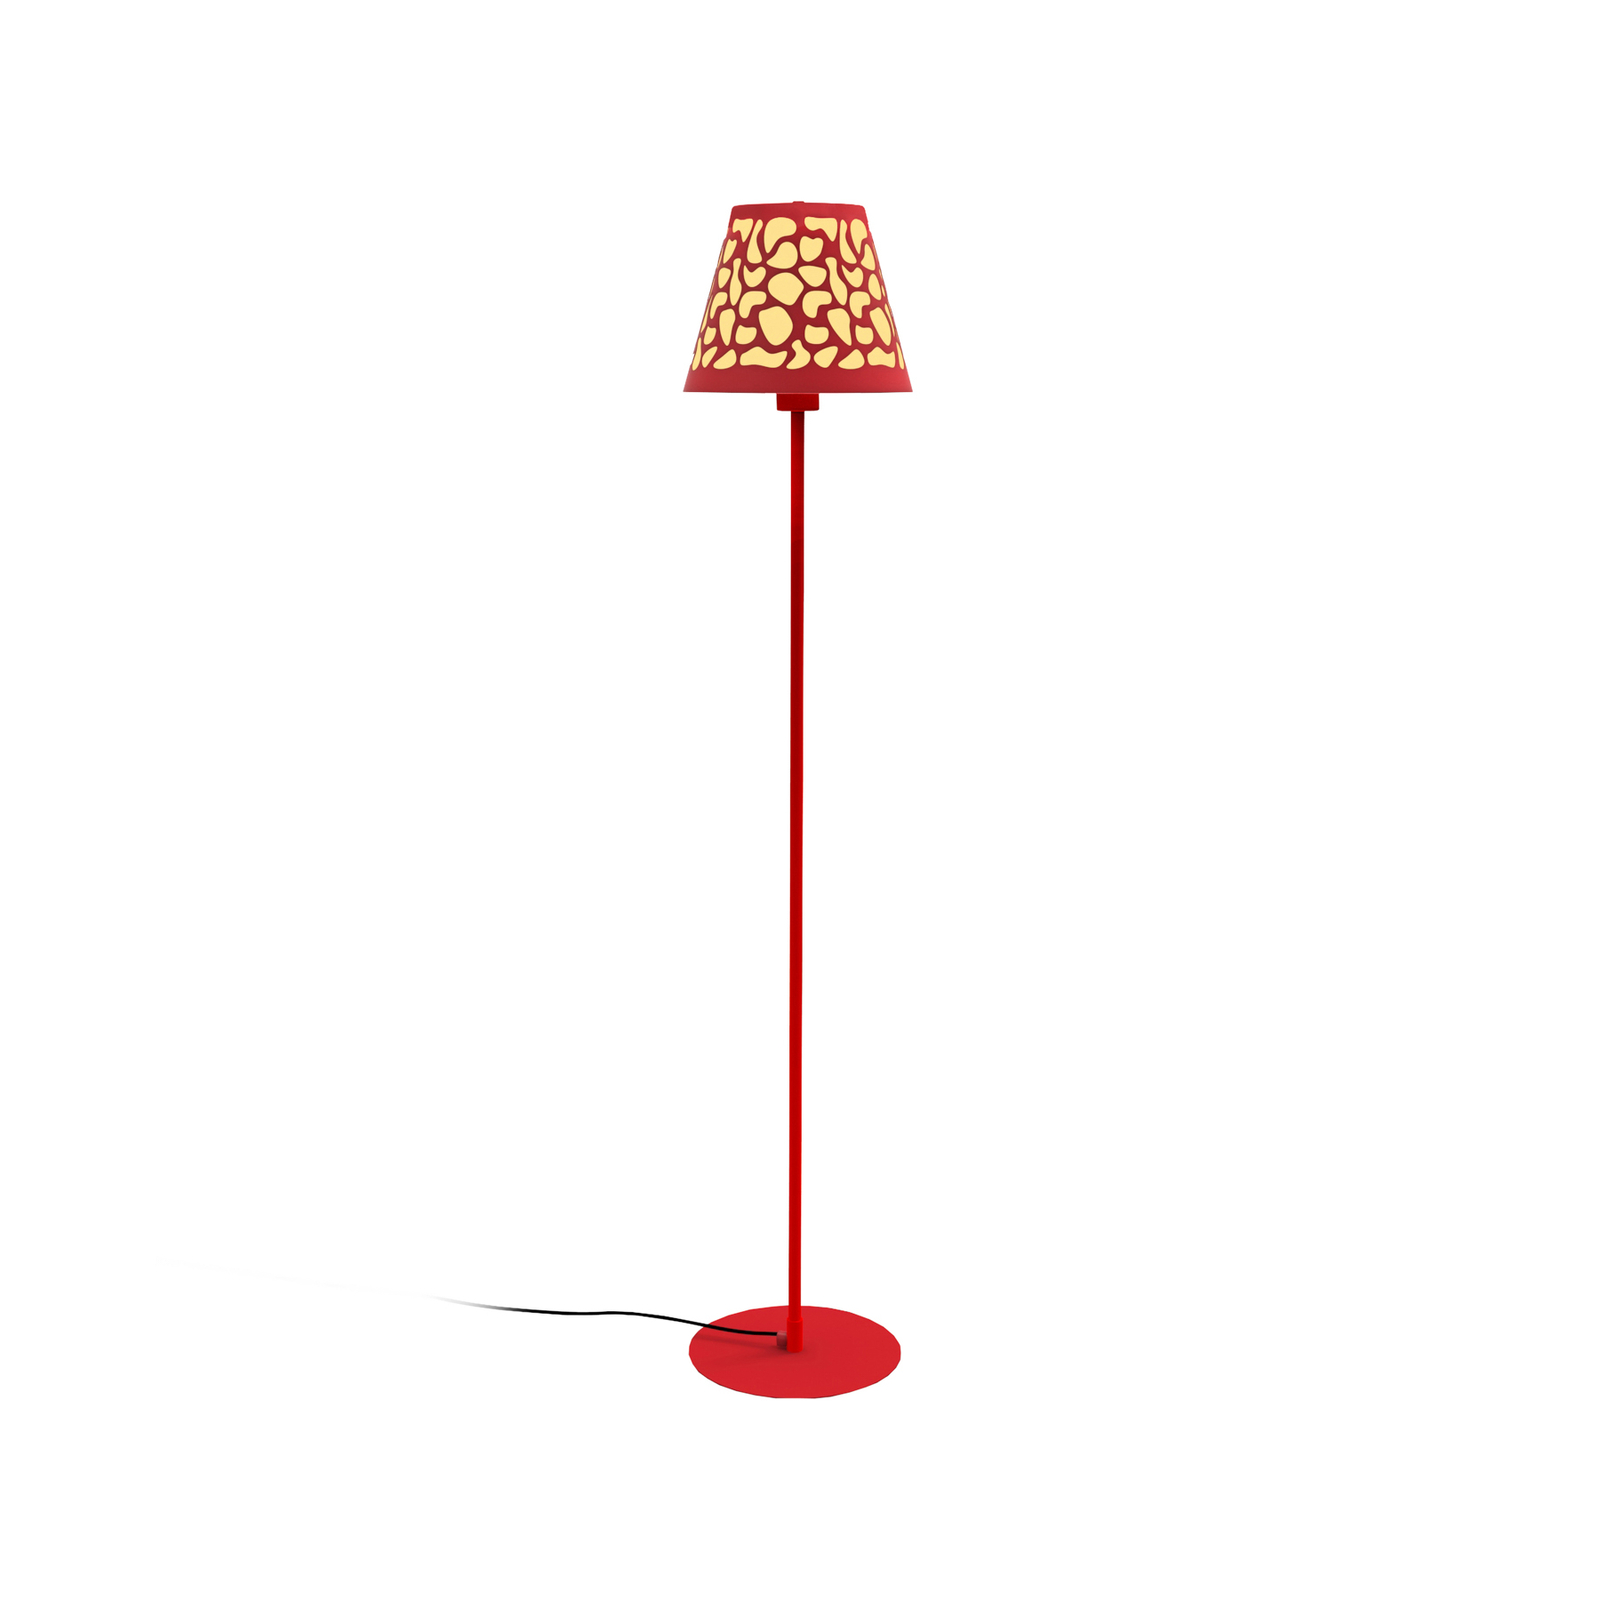 Aluminor Nihoa floor lamp, perforated, red/yellow